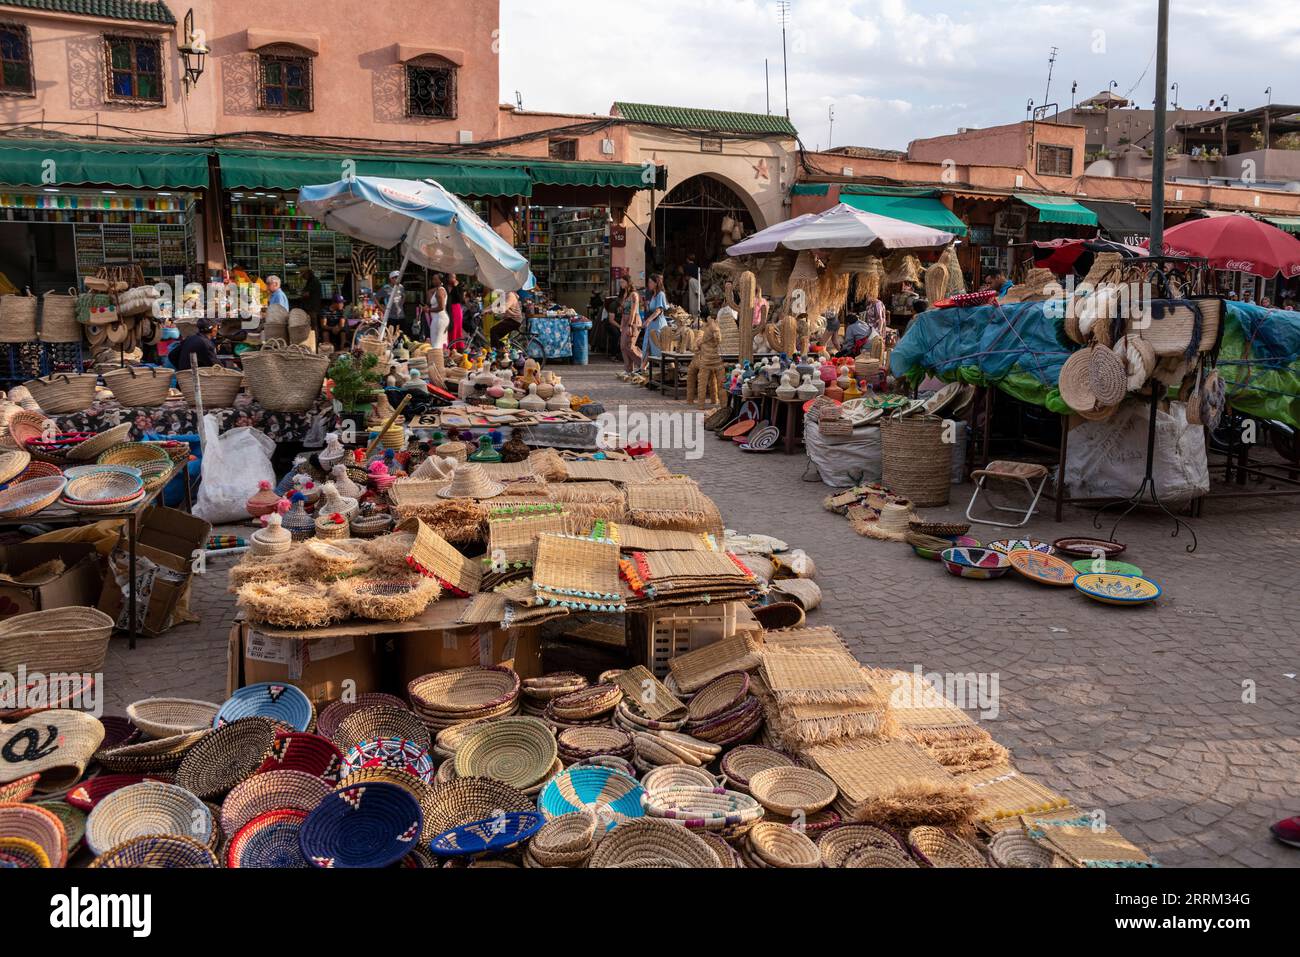 Impressioni di tipici souk marocchini nella medina di Marrakech Foto Stock